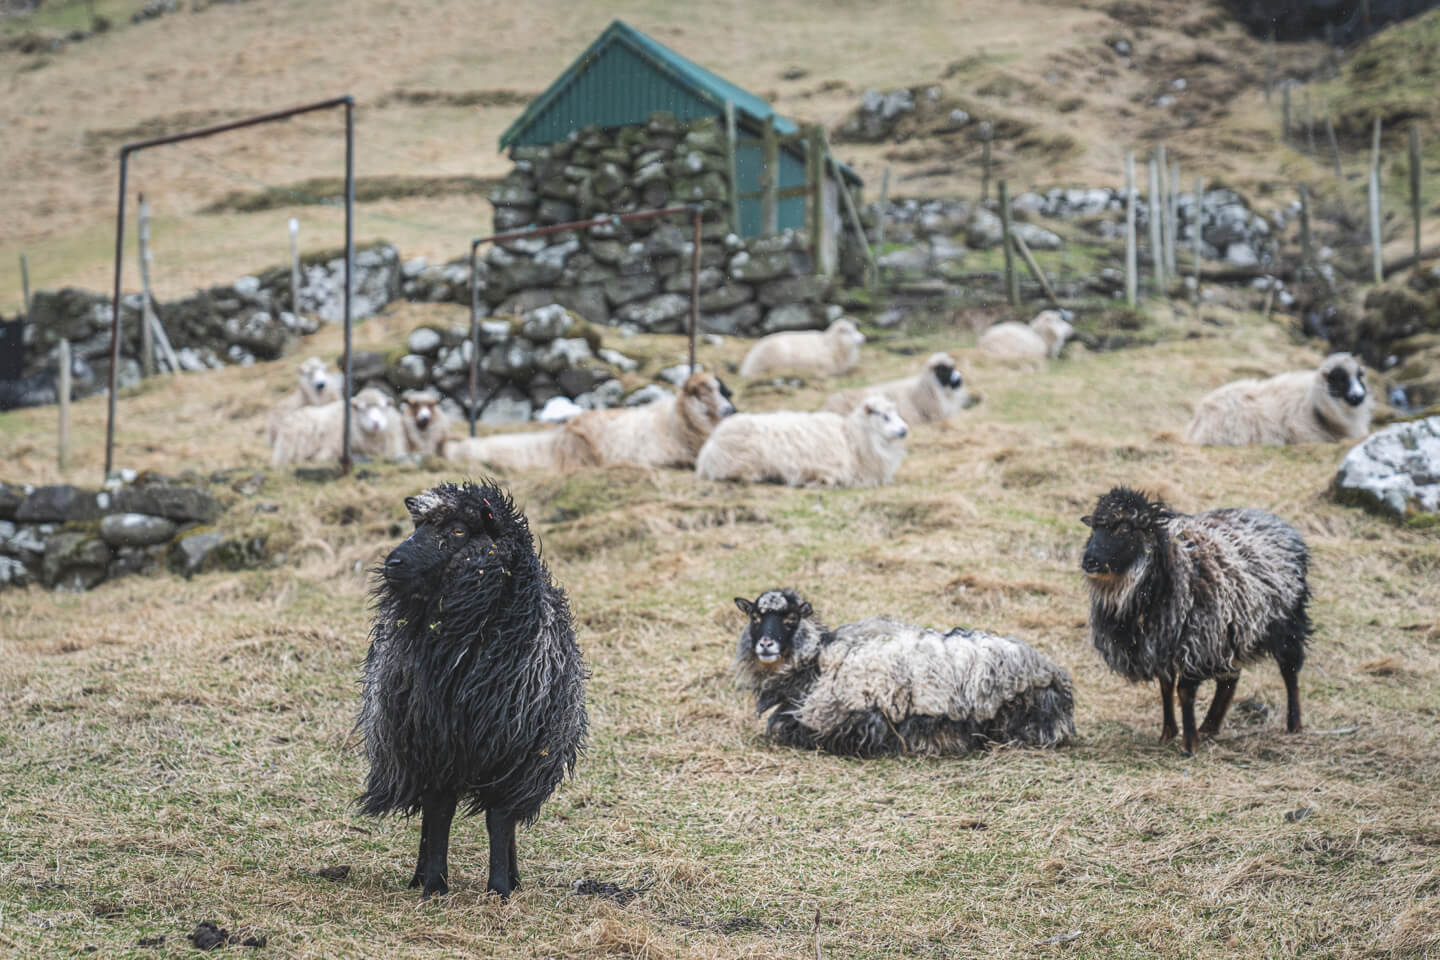 Schafe auf den Färöer-Inseln